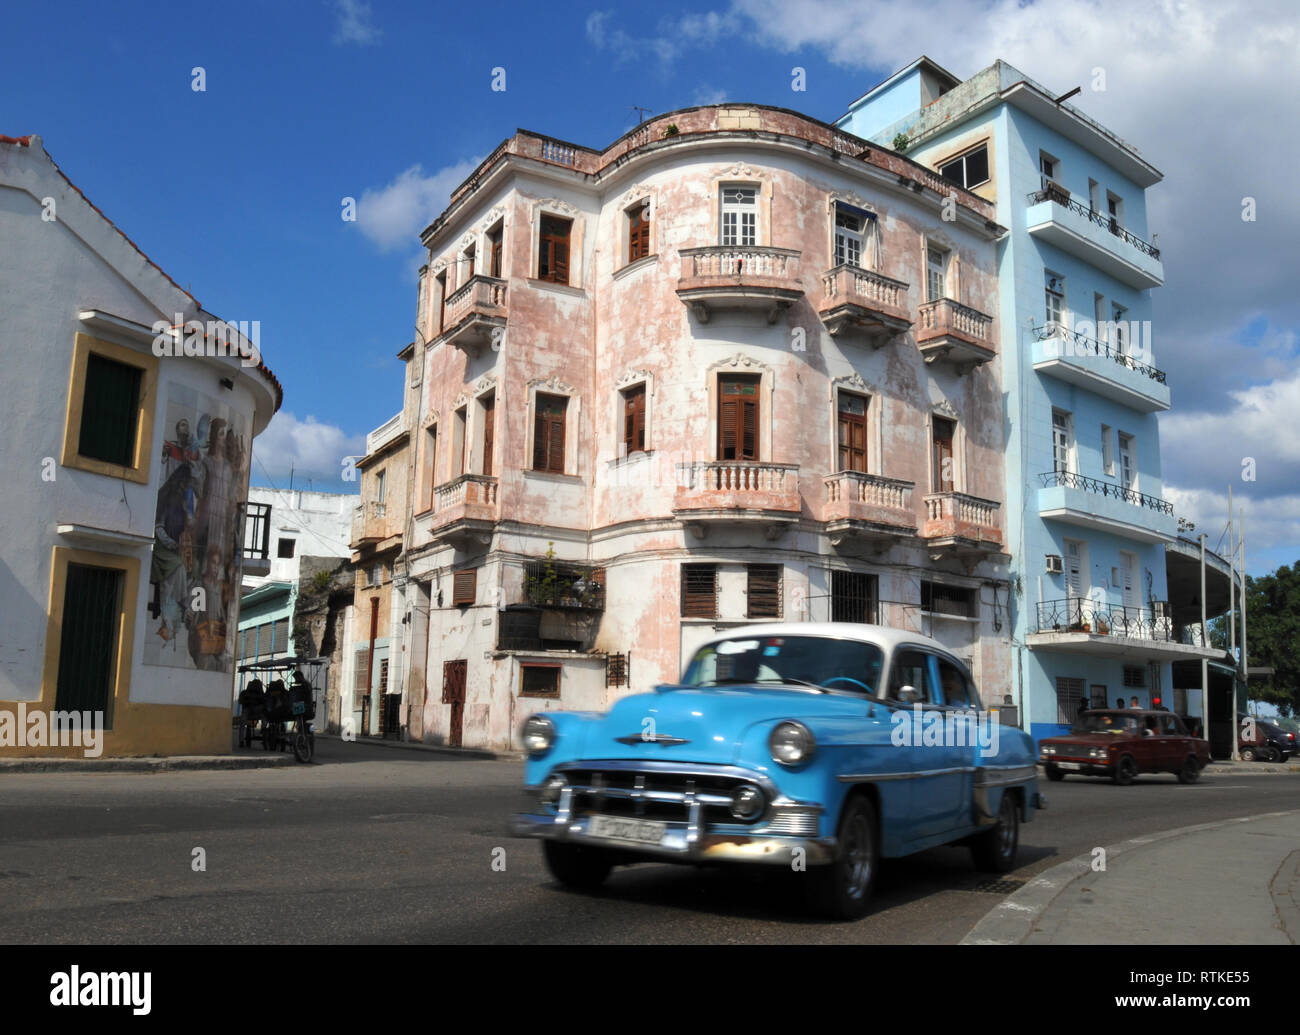 Ein klassisches Auto fährt auf einer Straße in der Altstadt von Havanna, Kuba, gesäumt mit bunten, historische Gebäude. Vintage amerikanische Autos sind einem gemeinsamen Standort in der Hauptstadt. Stockfoto